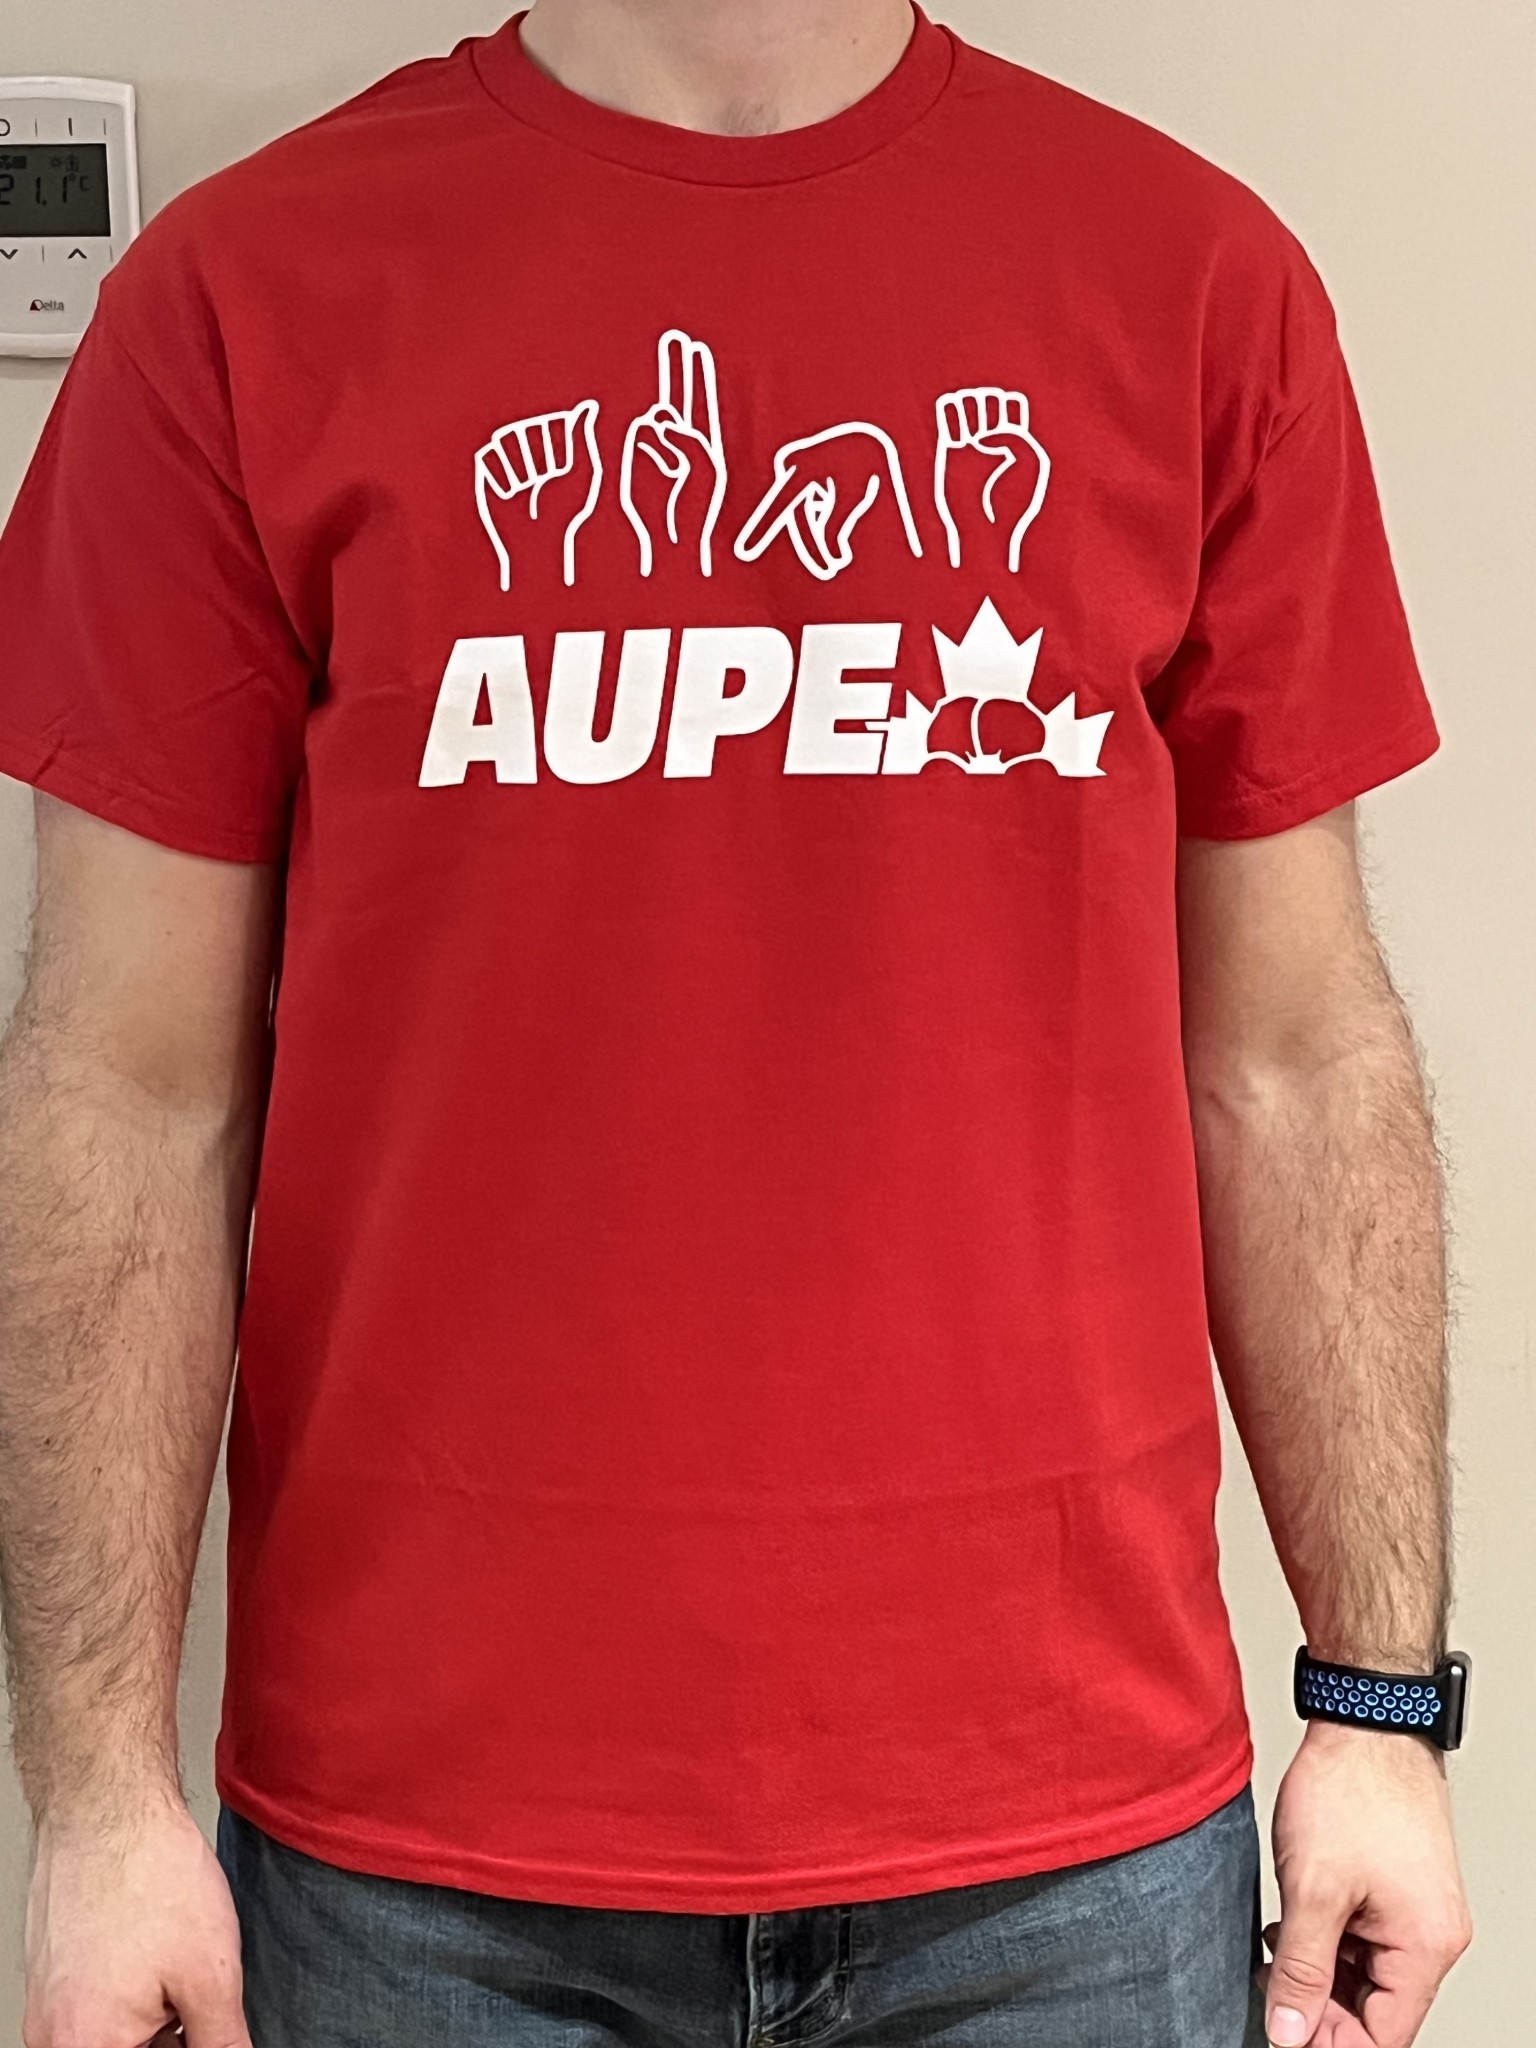 GILDAN AUPE ASL T -Shirt